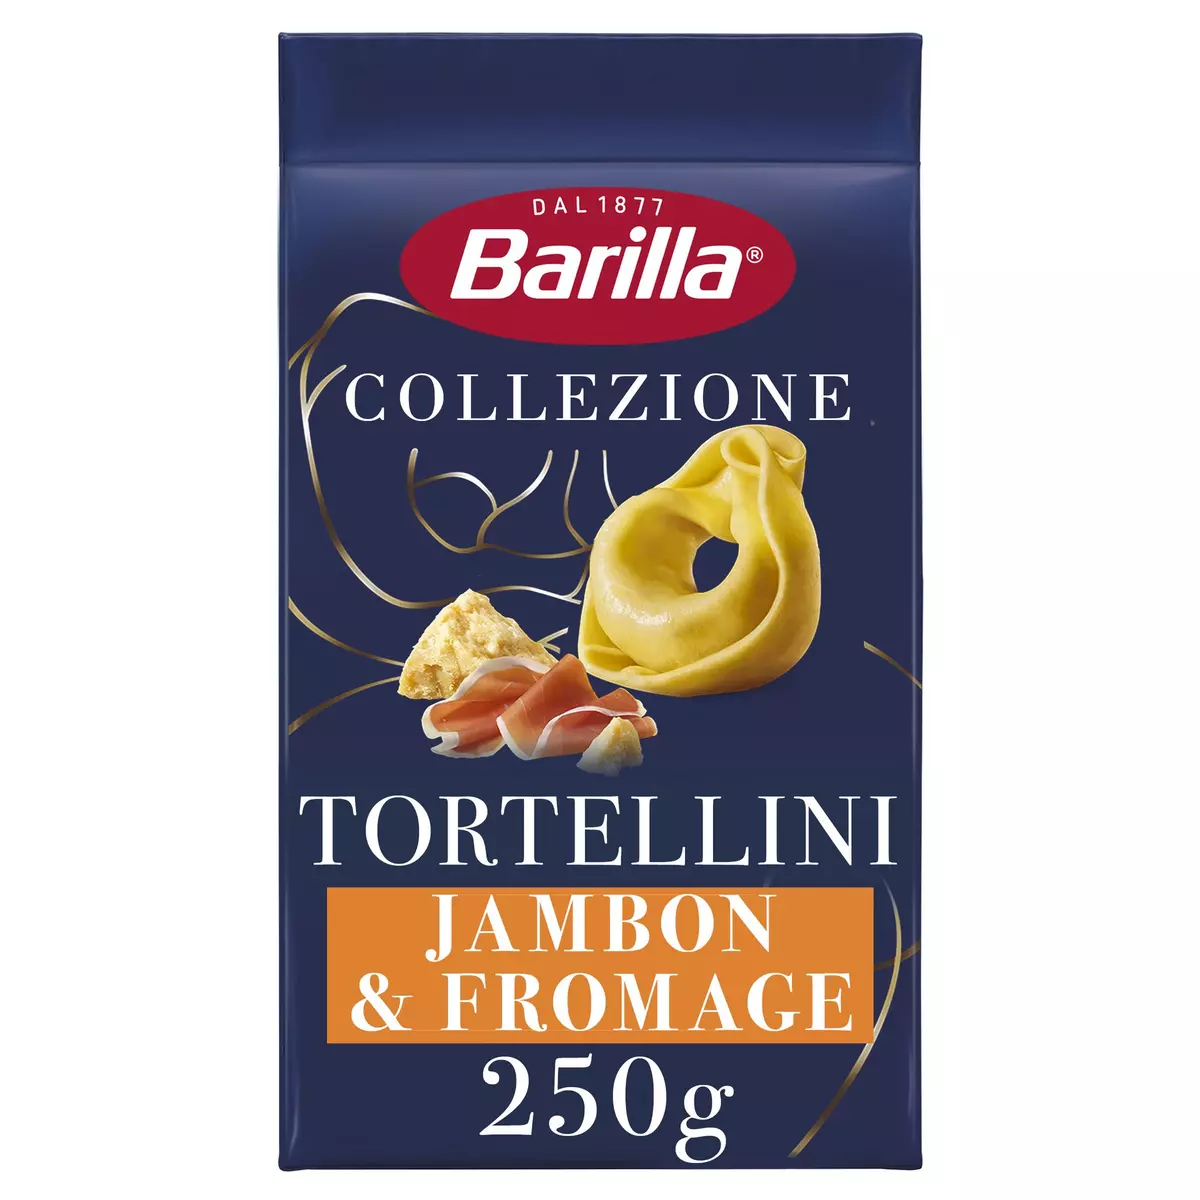 BARILLA Tortellini jambon fromage Collezione 3 personnes 250g